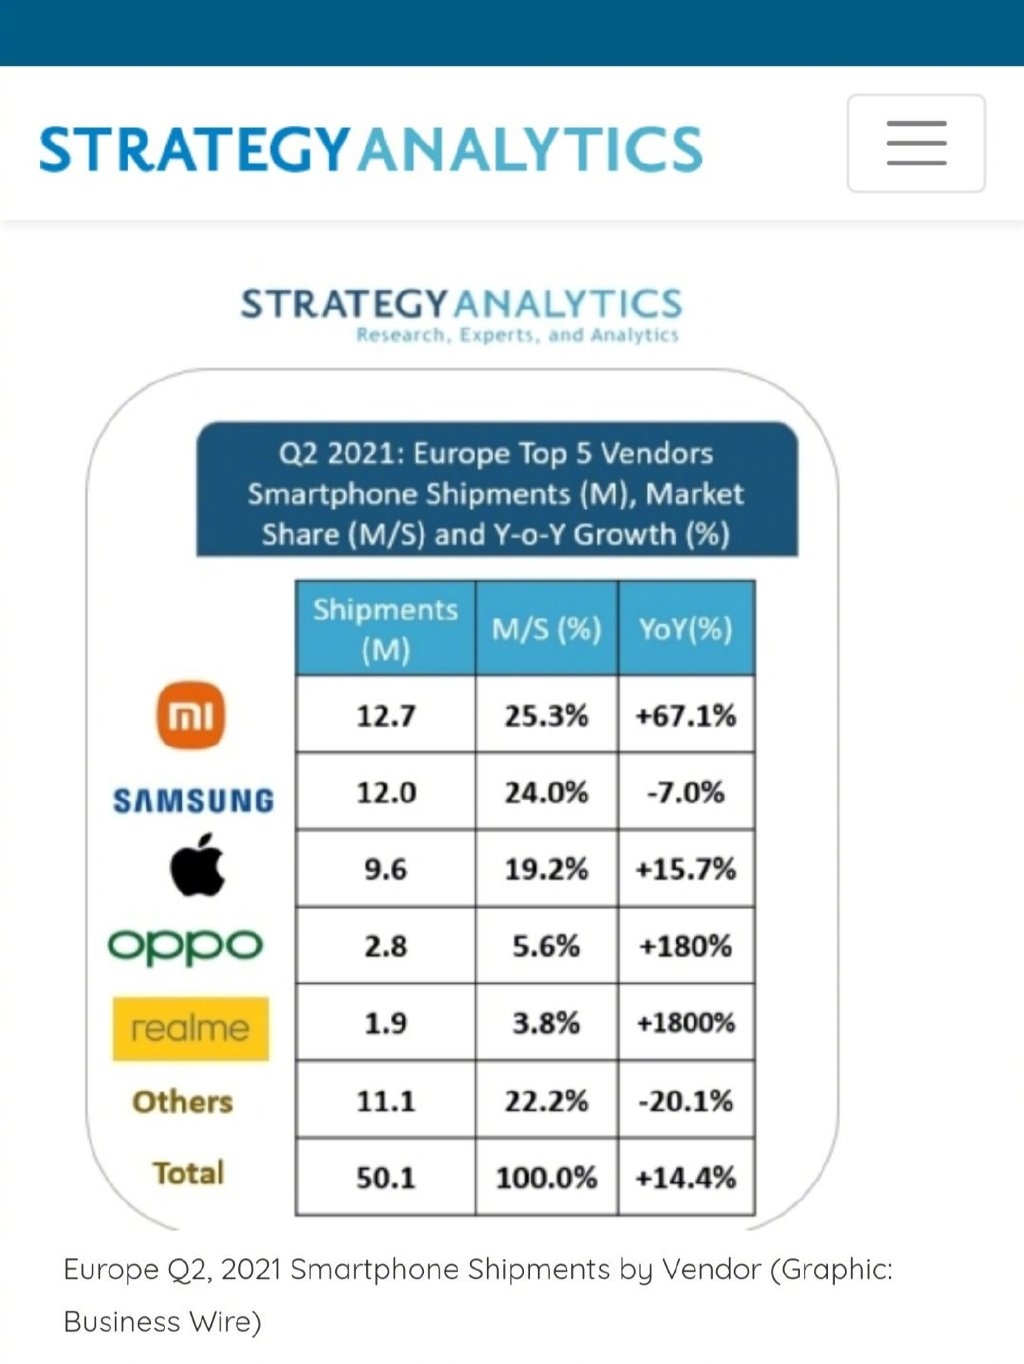 小米在欧洲首次登顶 市场份额超越苹果三星